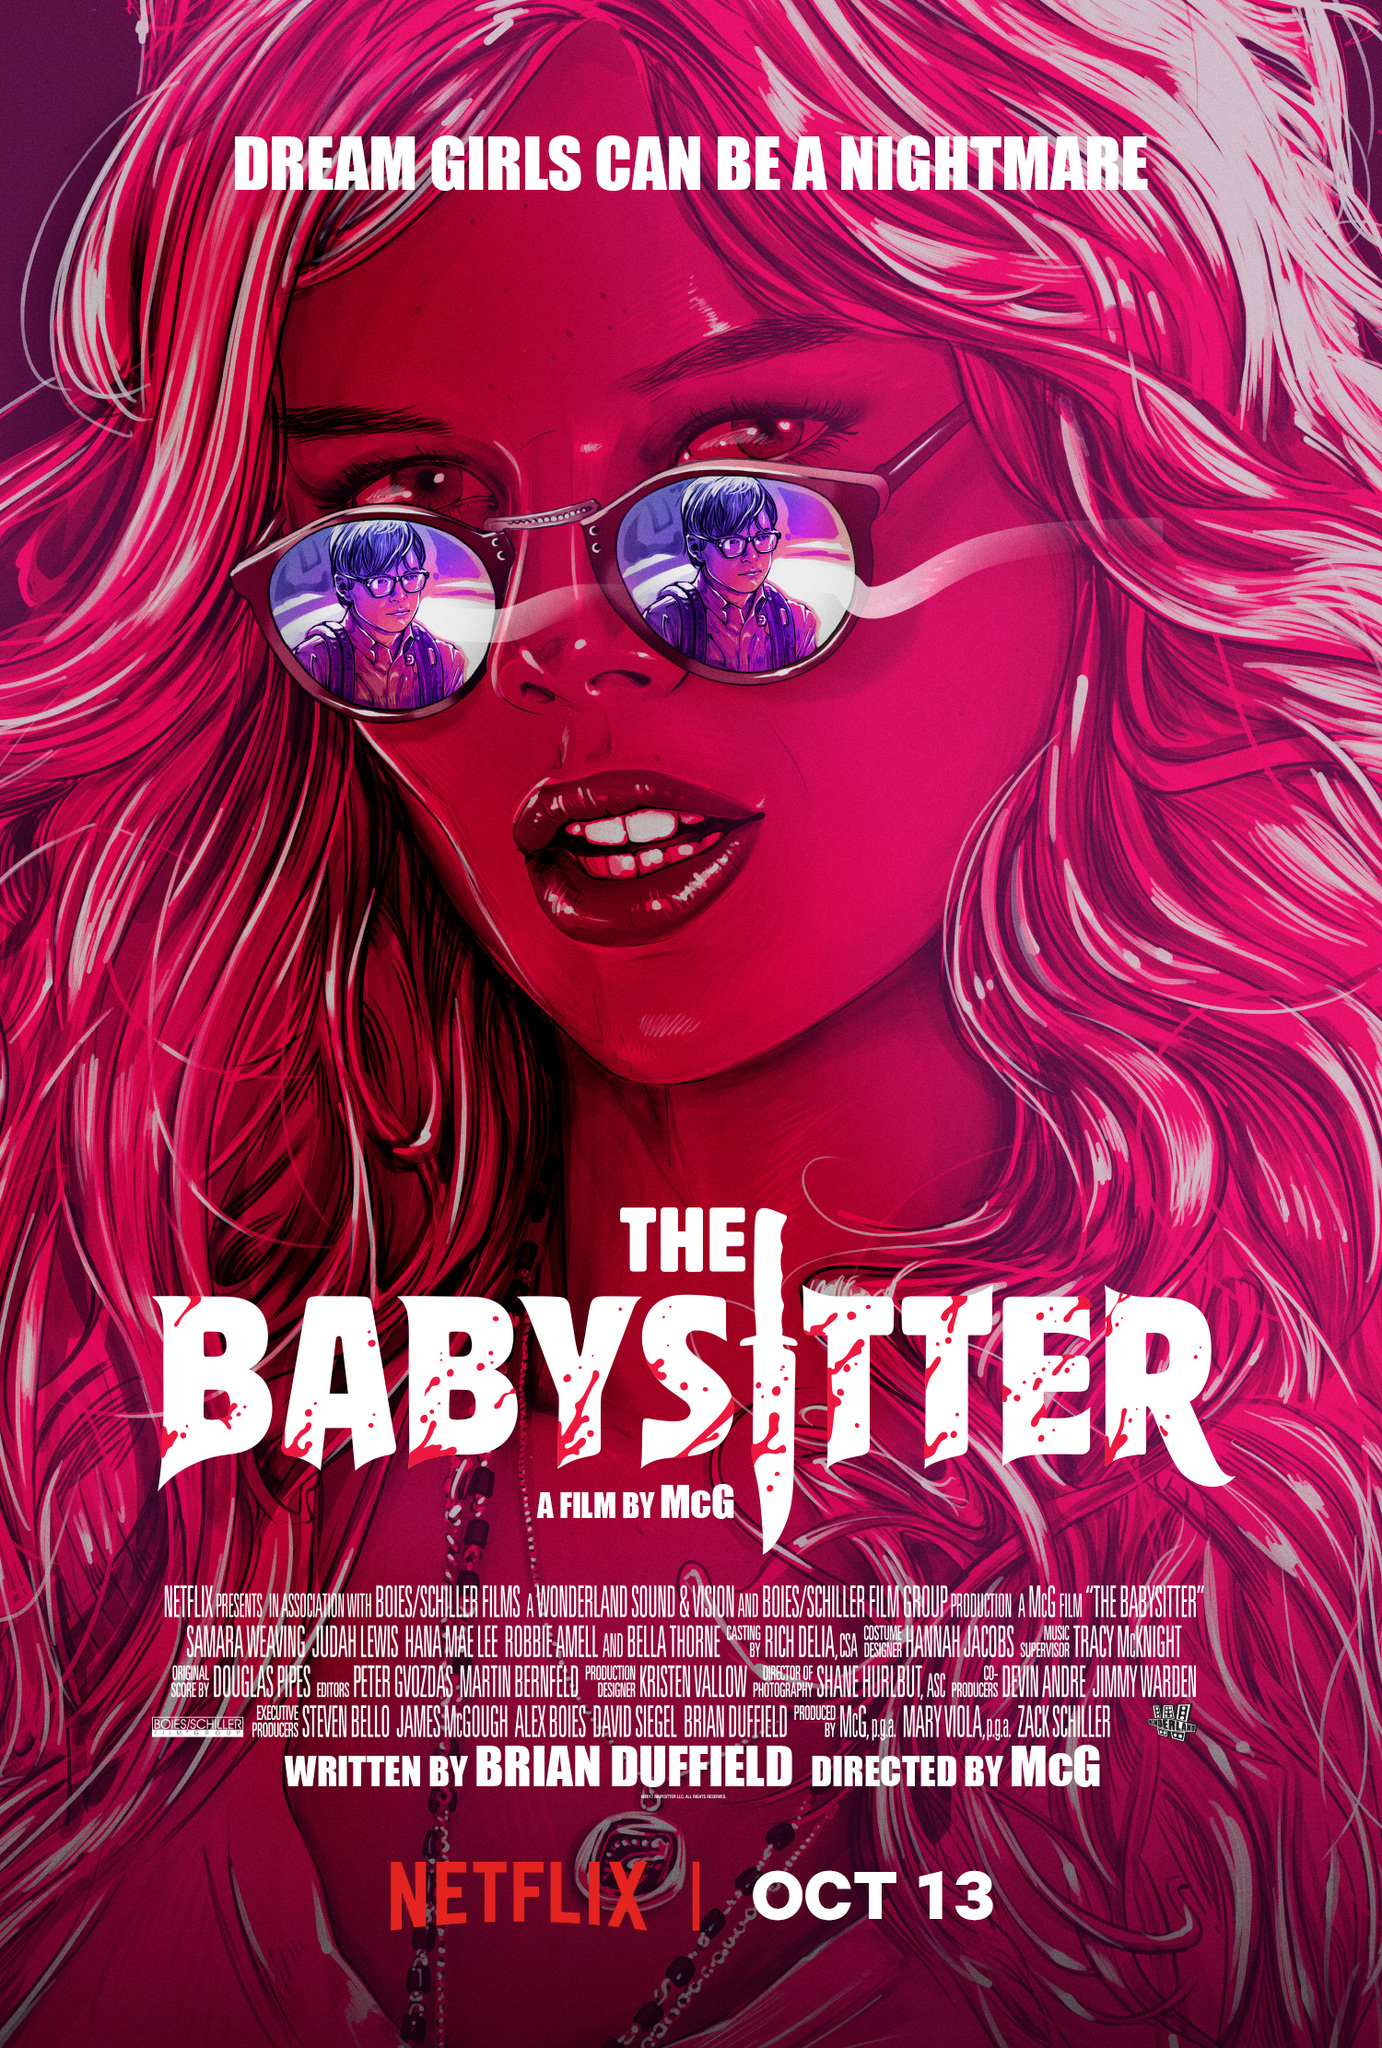 Nonton film The Babysitter layarkaca21 indoxx1 ganool online streaming terbaru